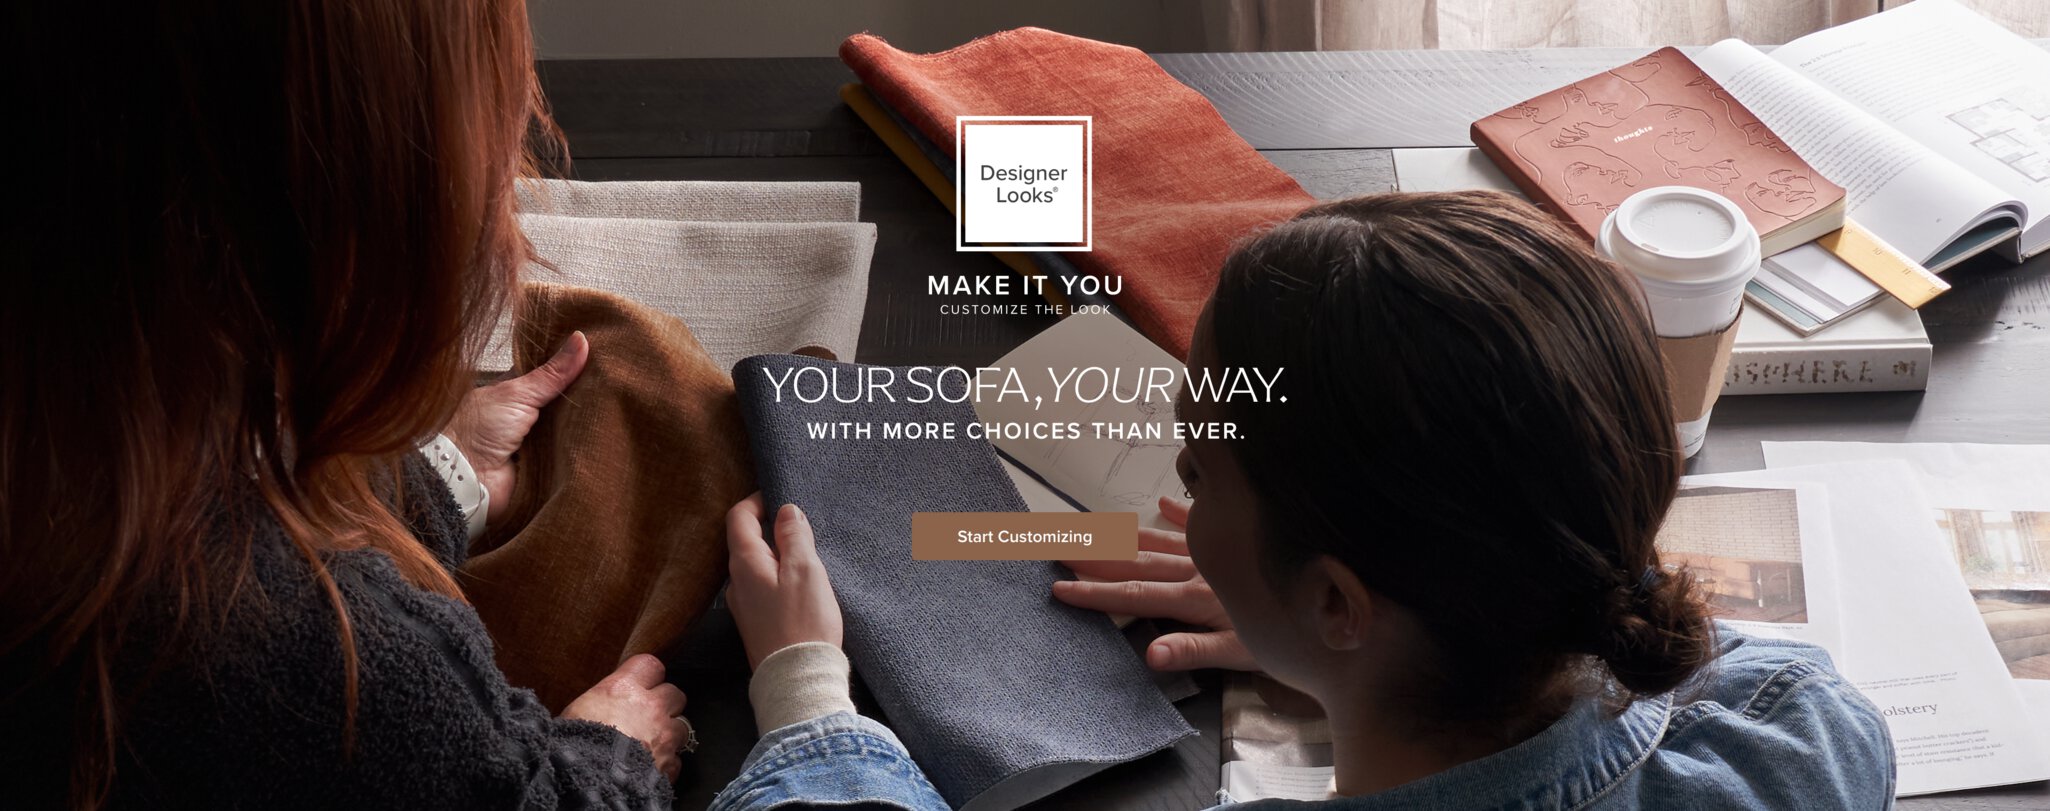 Start customizing your sofa, your way